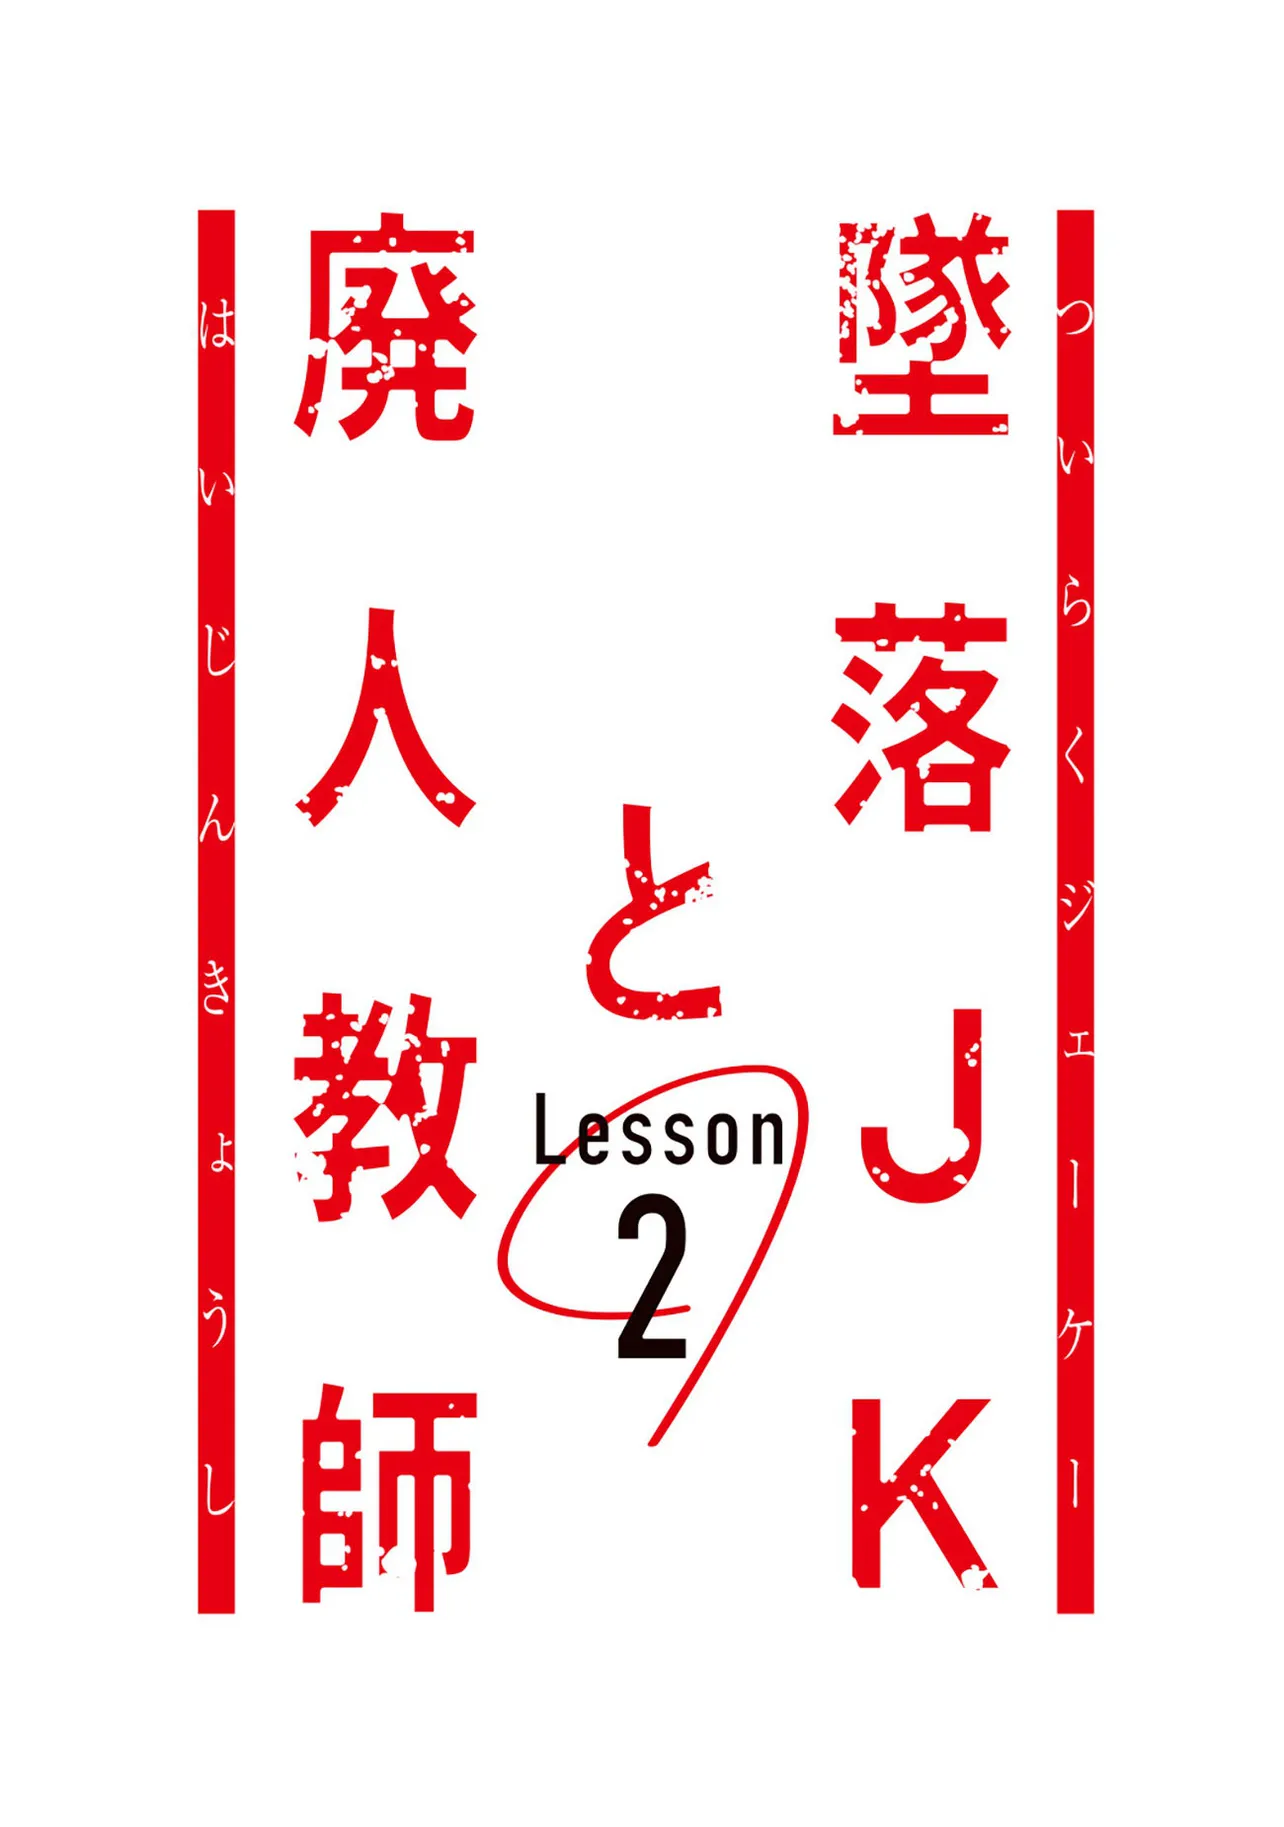 ドラマイズム「墜落JKと廃人教師 Lesson2」ロゴ